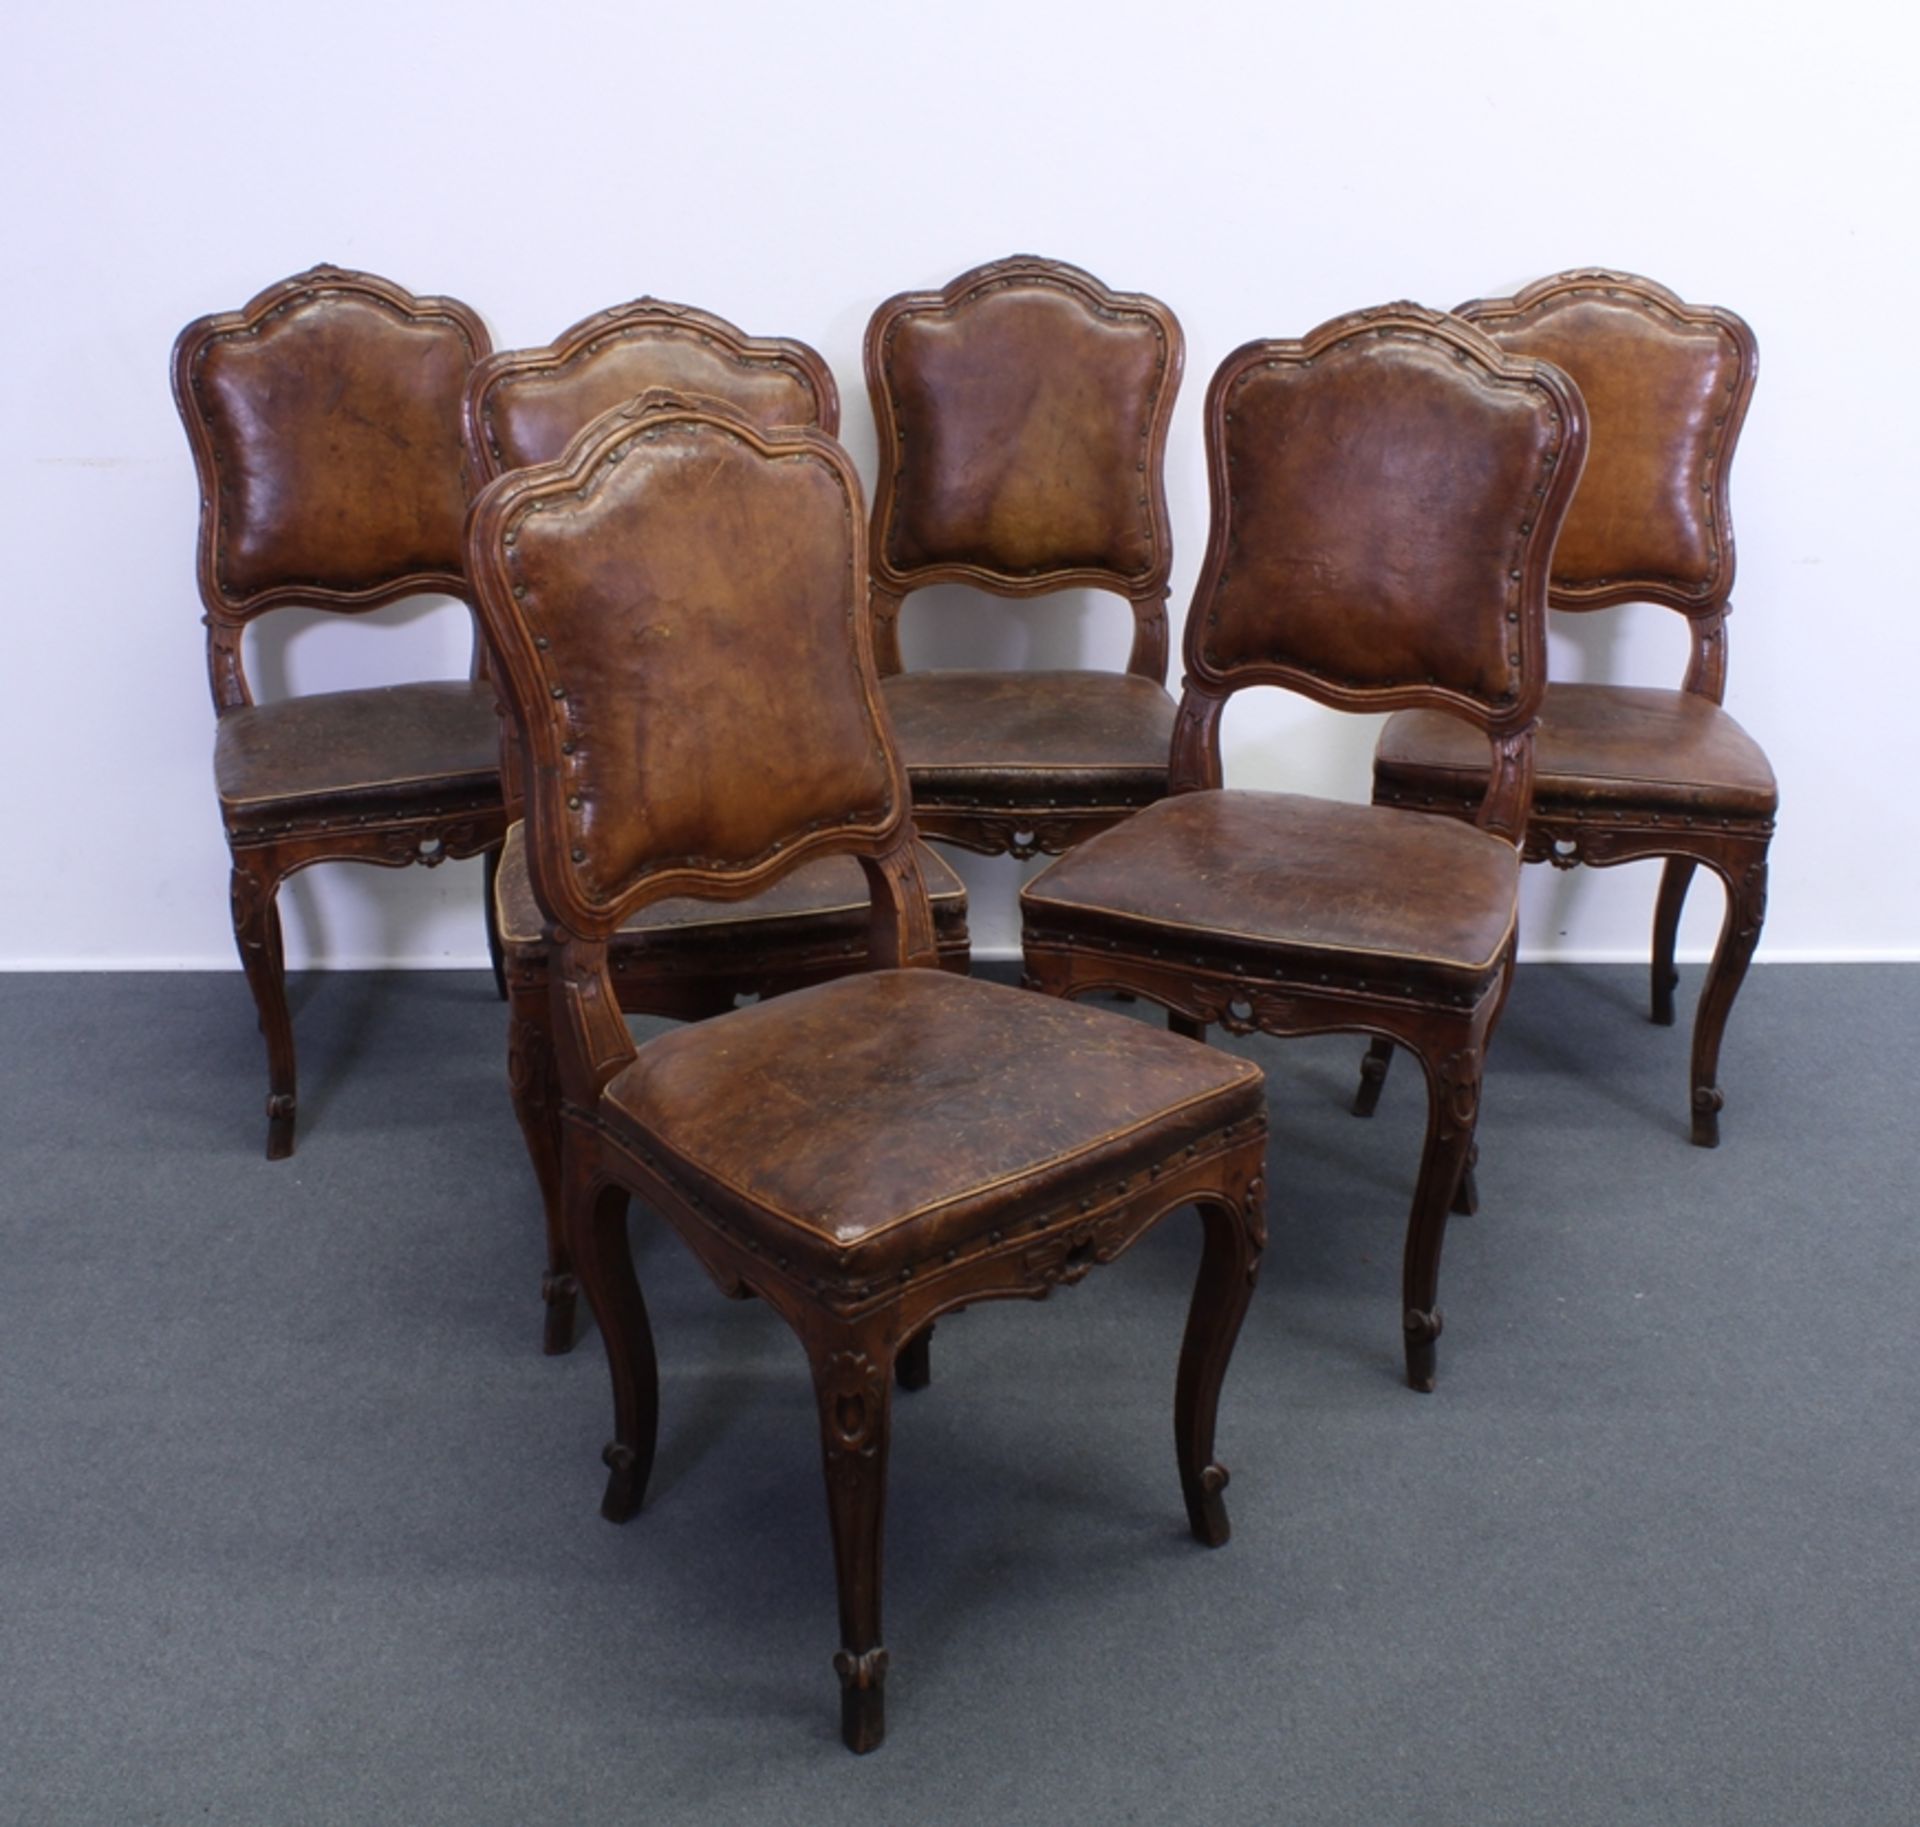 Satz aus 6 Stühlen, Barock, Lombardei, Mitte 18. Jh., Nussbaum geschnitzt, Sitzfläche und Rücklehne